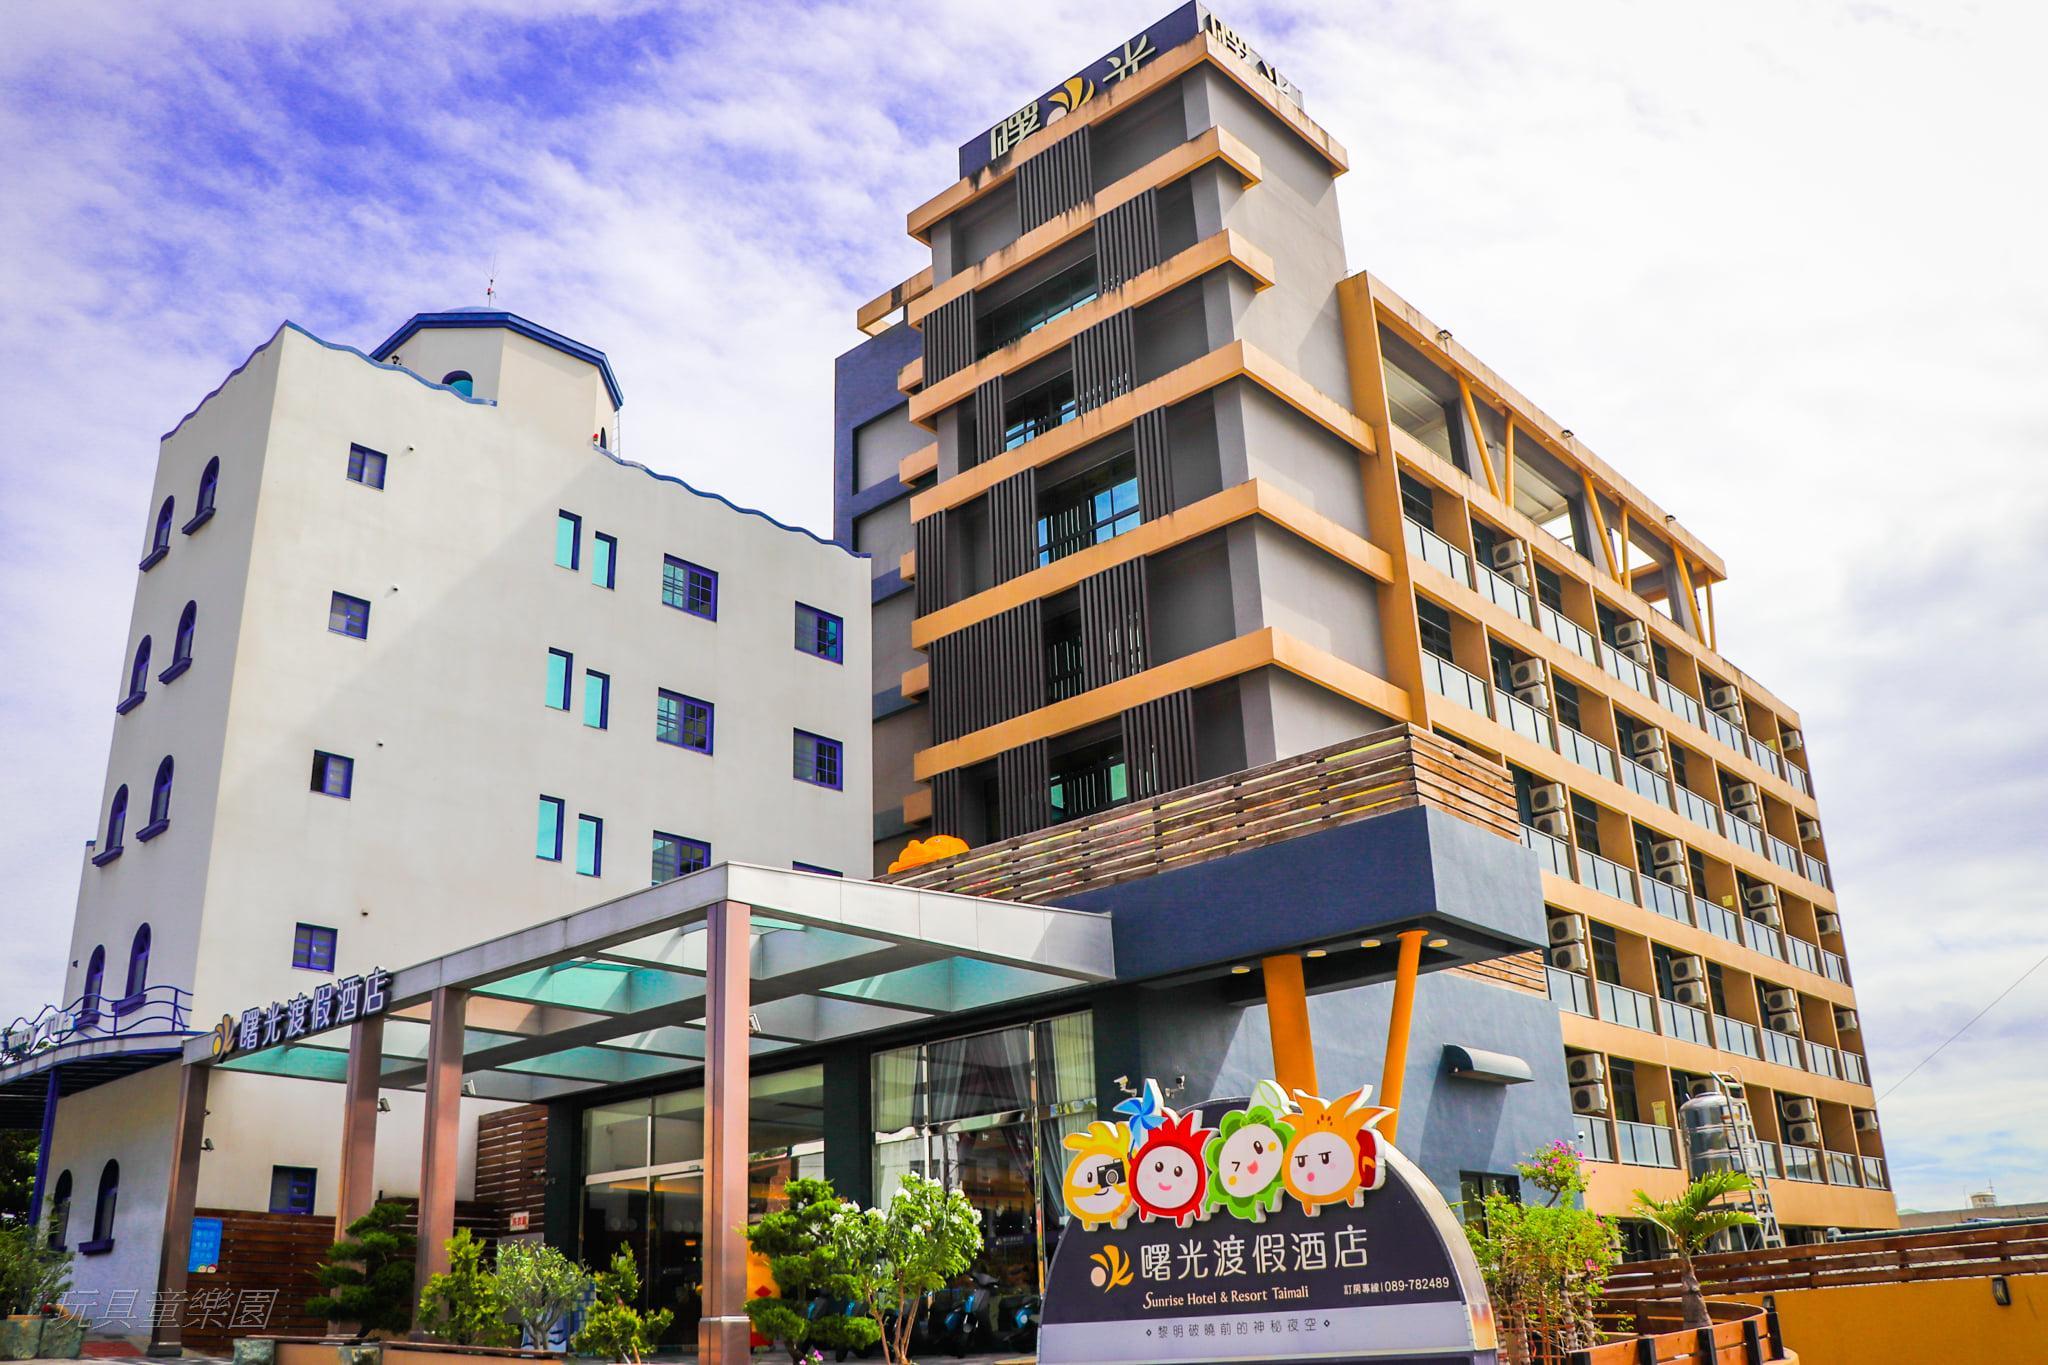 Sunrise Hotel & Resort Taimali - Taitung County